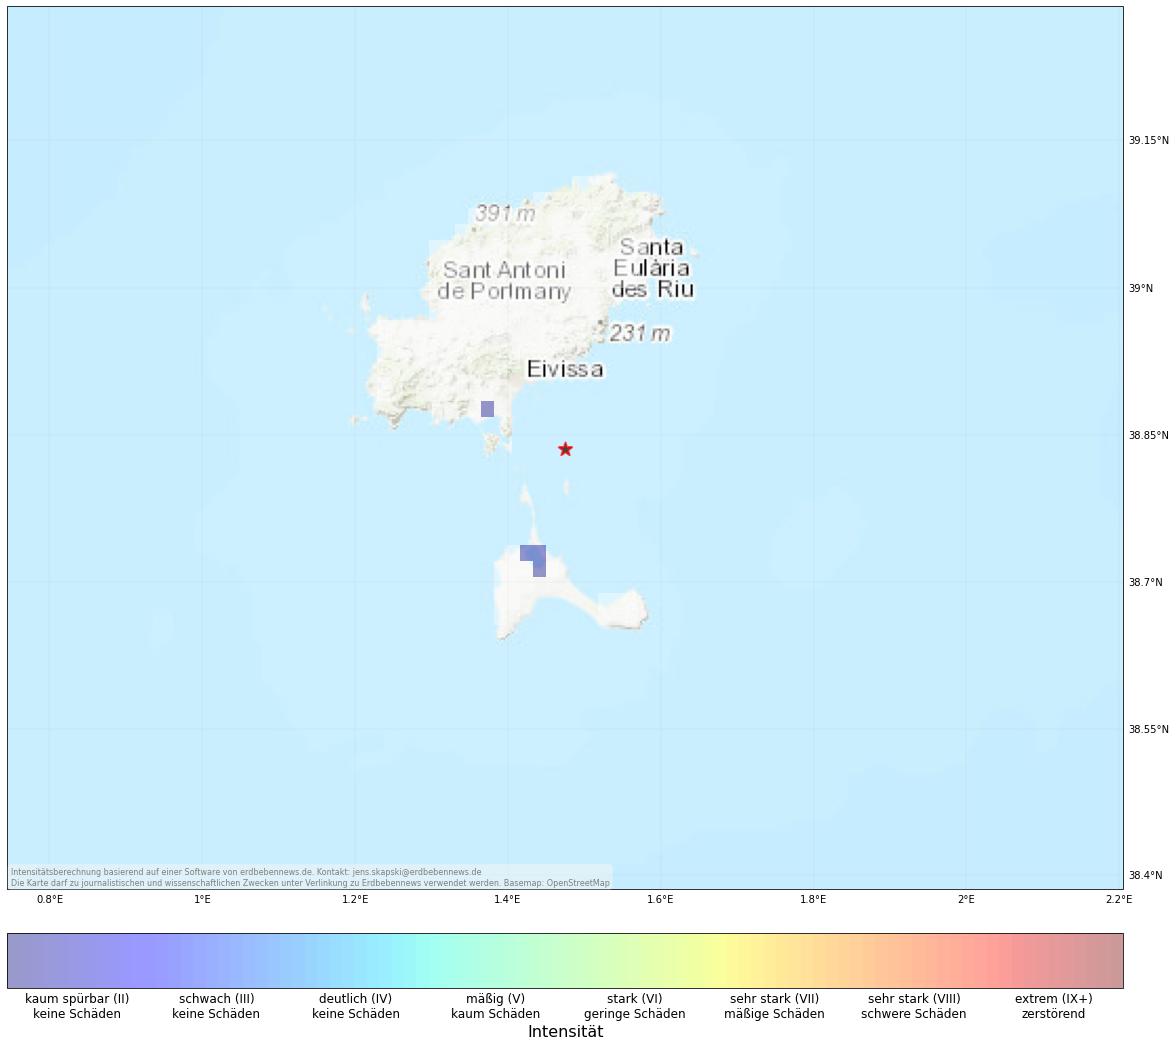 Berechnete Intensität (ShakeMap) des Erdbebens der Stärke 2.4 am 16. Dezember, 13:50 Uhr in Spanien